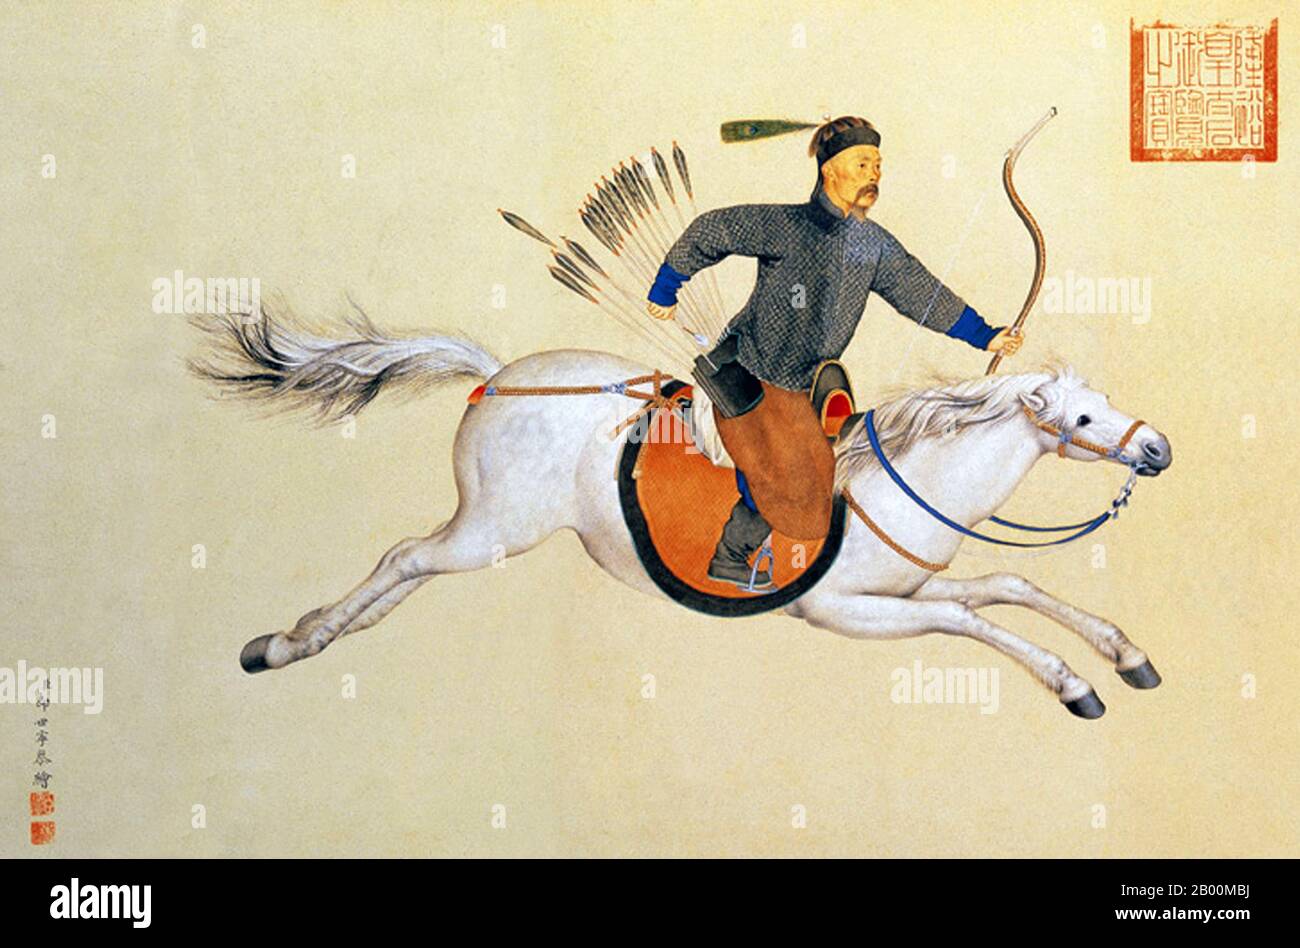 Cina: Manchu generale Machang cavalcare a pieno galoppo su cavallo bianco con arco e frecce, regno di imperatore Qianlong, c.. 1765, di Giuseppe Castiglione (1688-1766). I cavalli di Ferghana erano una delle prime importazioni principali della Cina, originari di una zona dell'Asia centrale. Dayuan, a nord di Bactria, era una nazione centrata nella Valle di Farghana dell'odierna Asia Centrale, e anche già dalla dinastia Han, la Cina proiettò il suo potere militare in quella zona. Il regime imperiale richiedeva cavalli Ferghana e importava un numero così elevato di loro che i governanti di Ferghana chiudevano i loro confini a tale commercio. Foto Stock